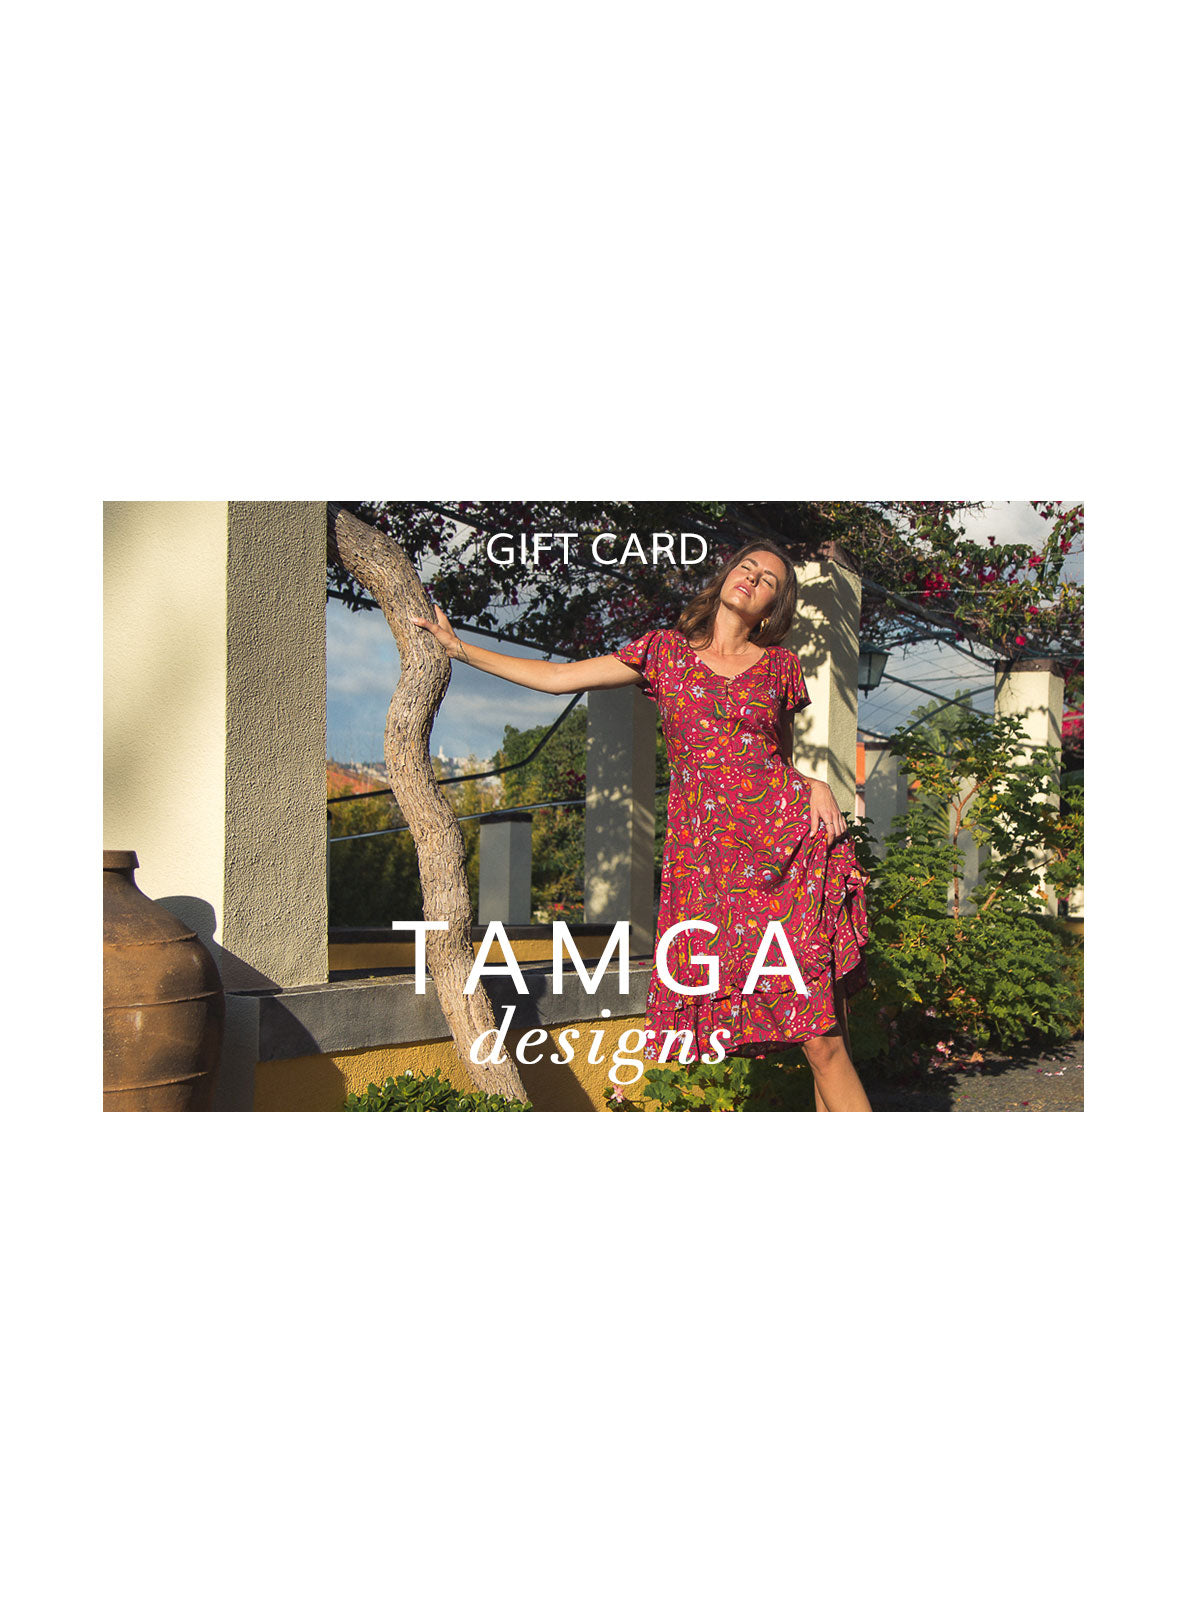 TAMGA Gift Card